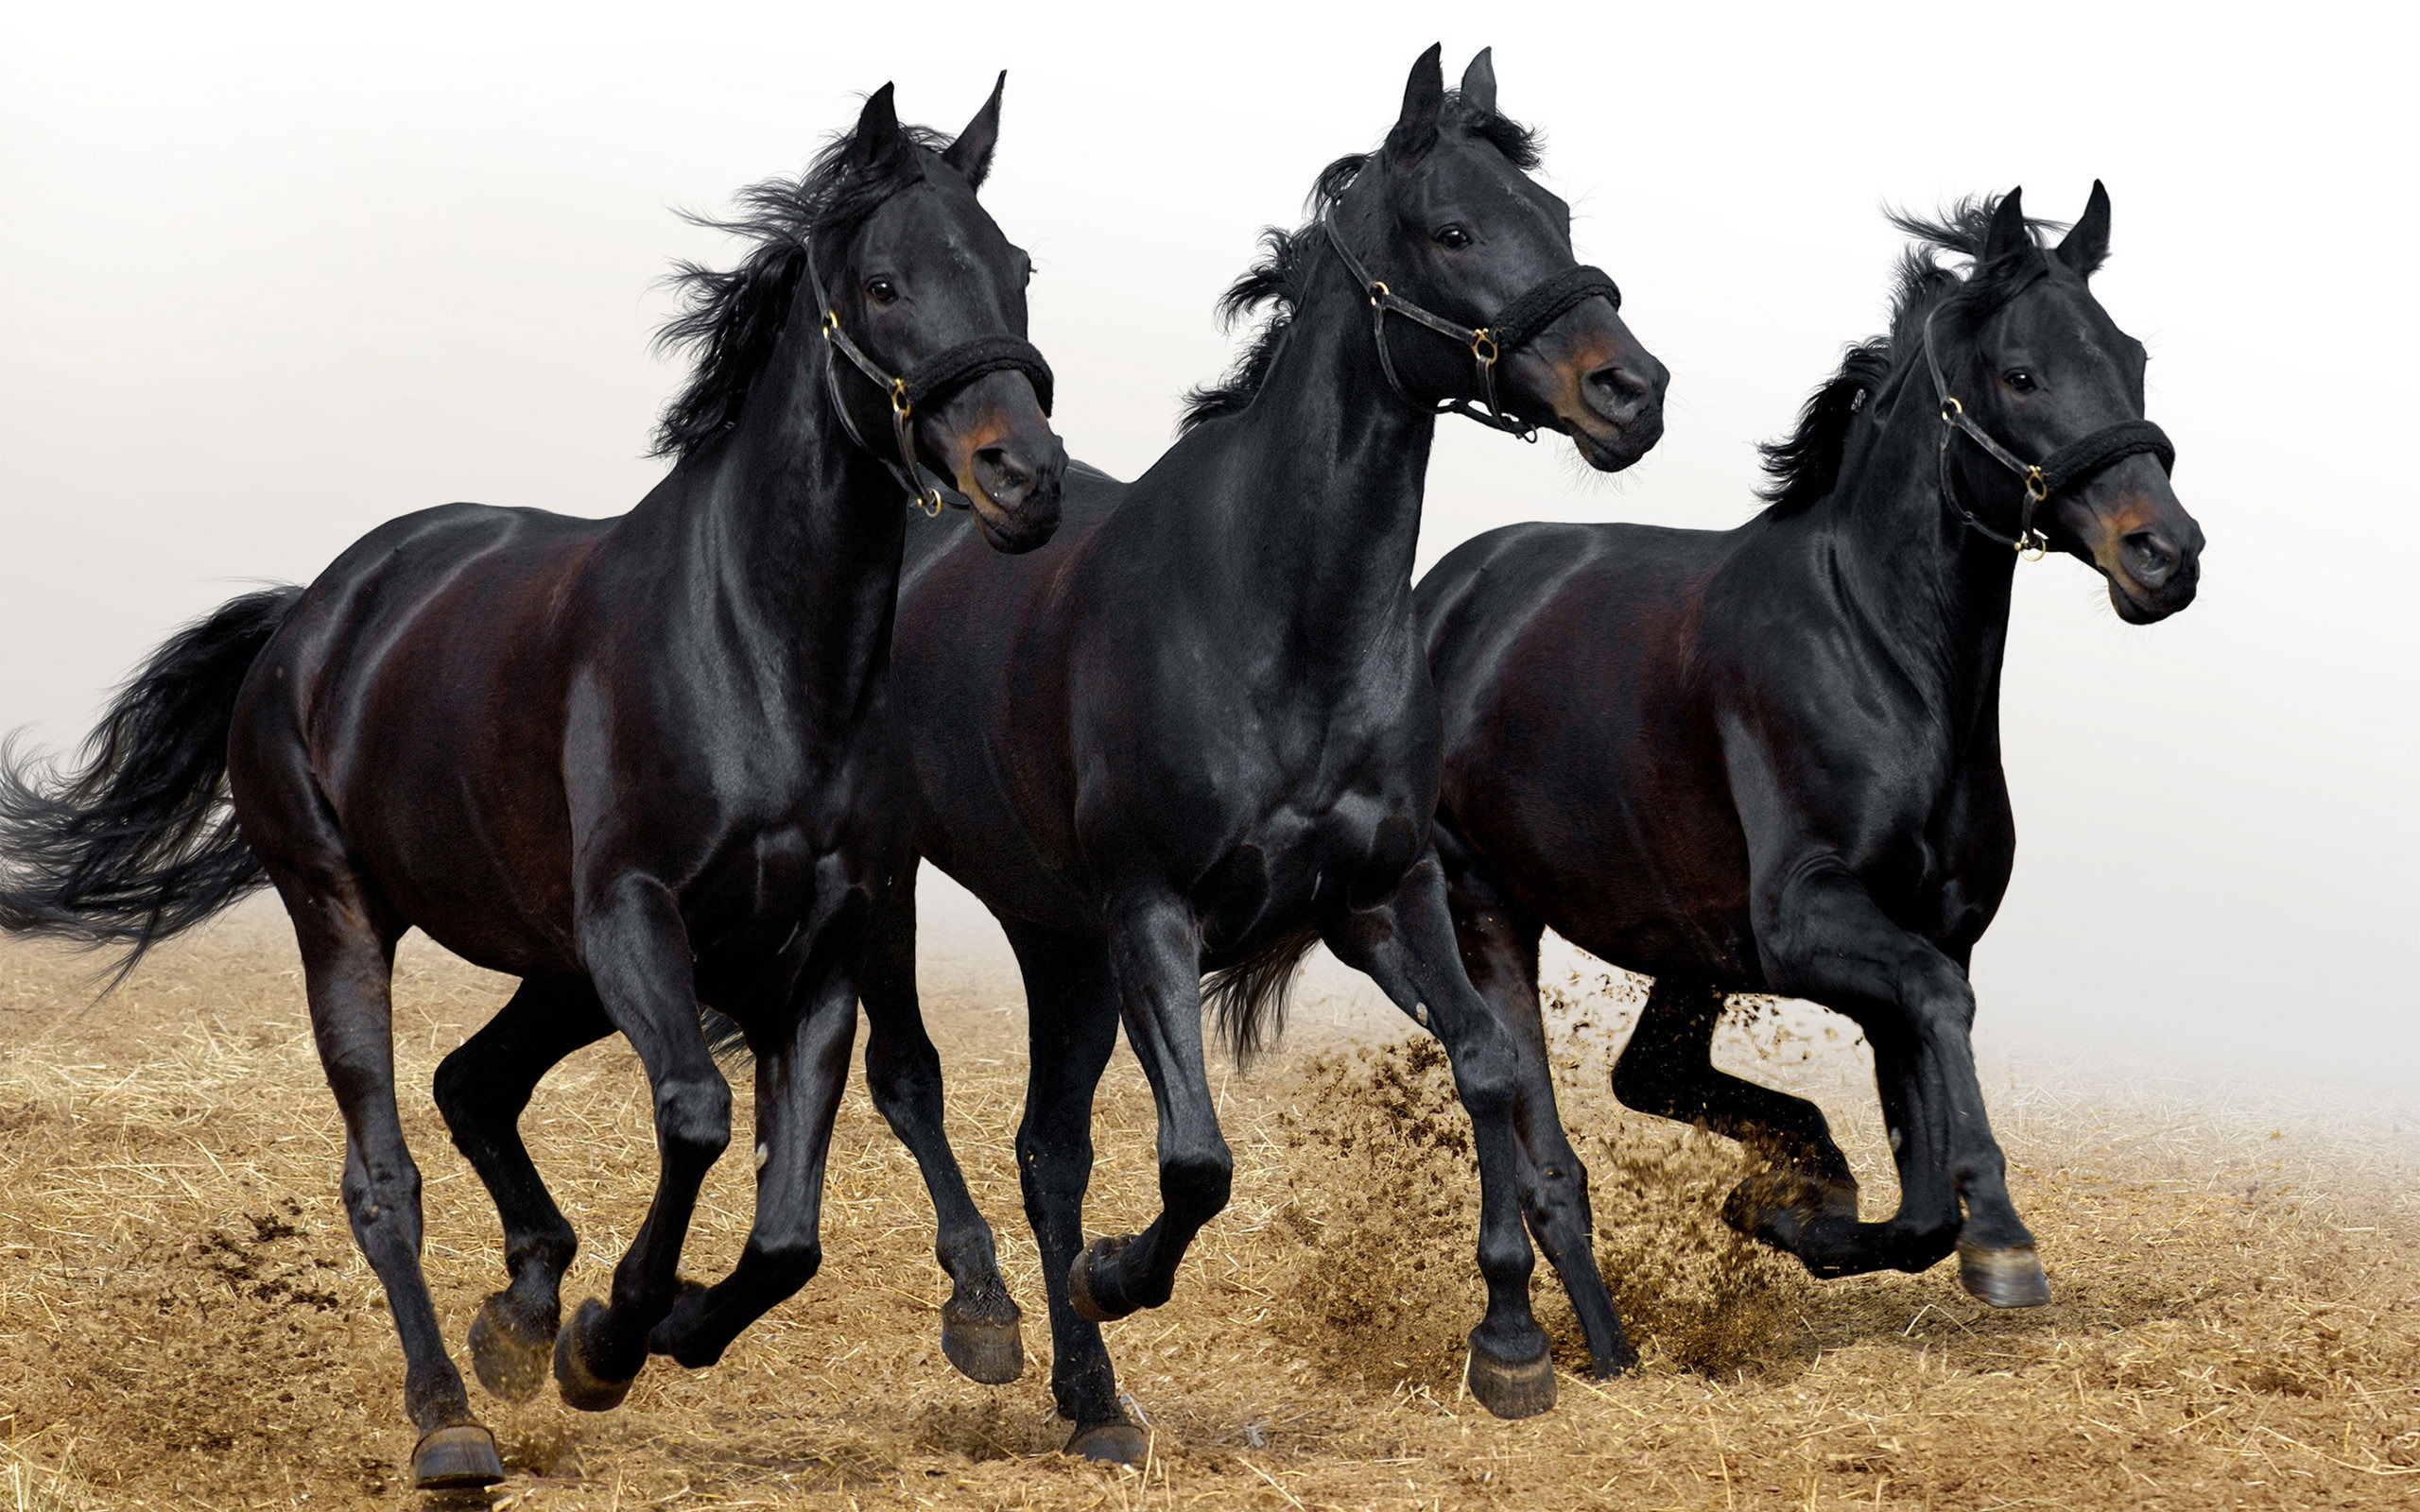 Three black horses running in a field.